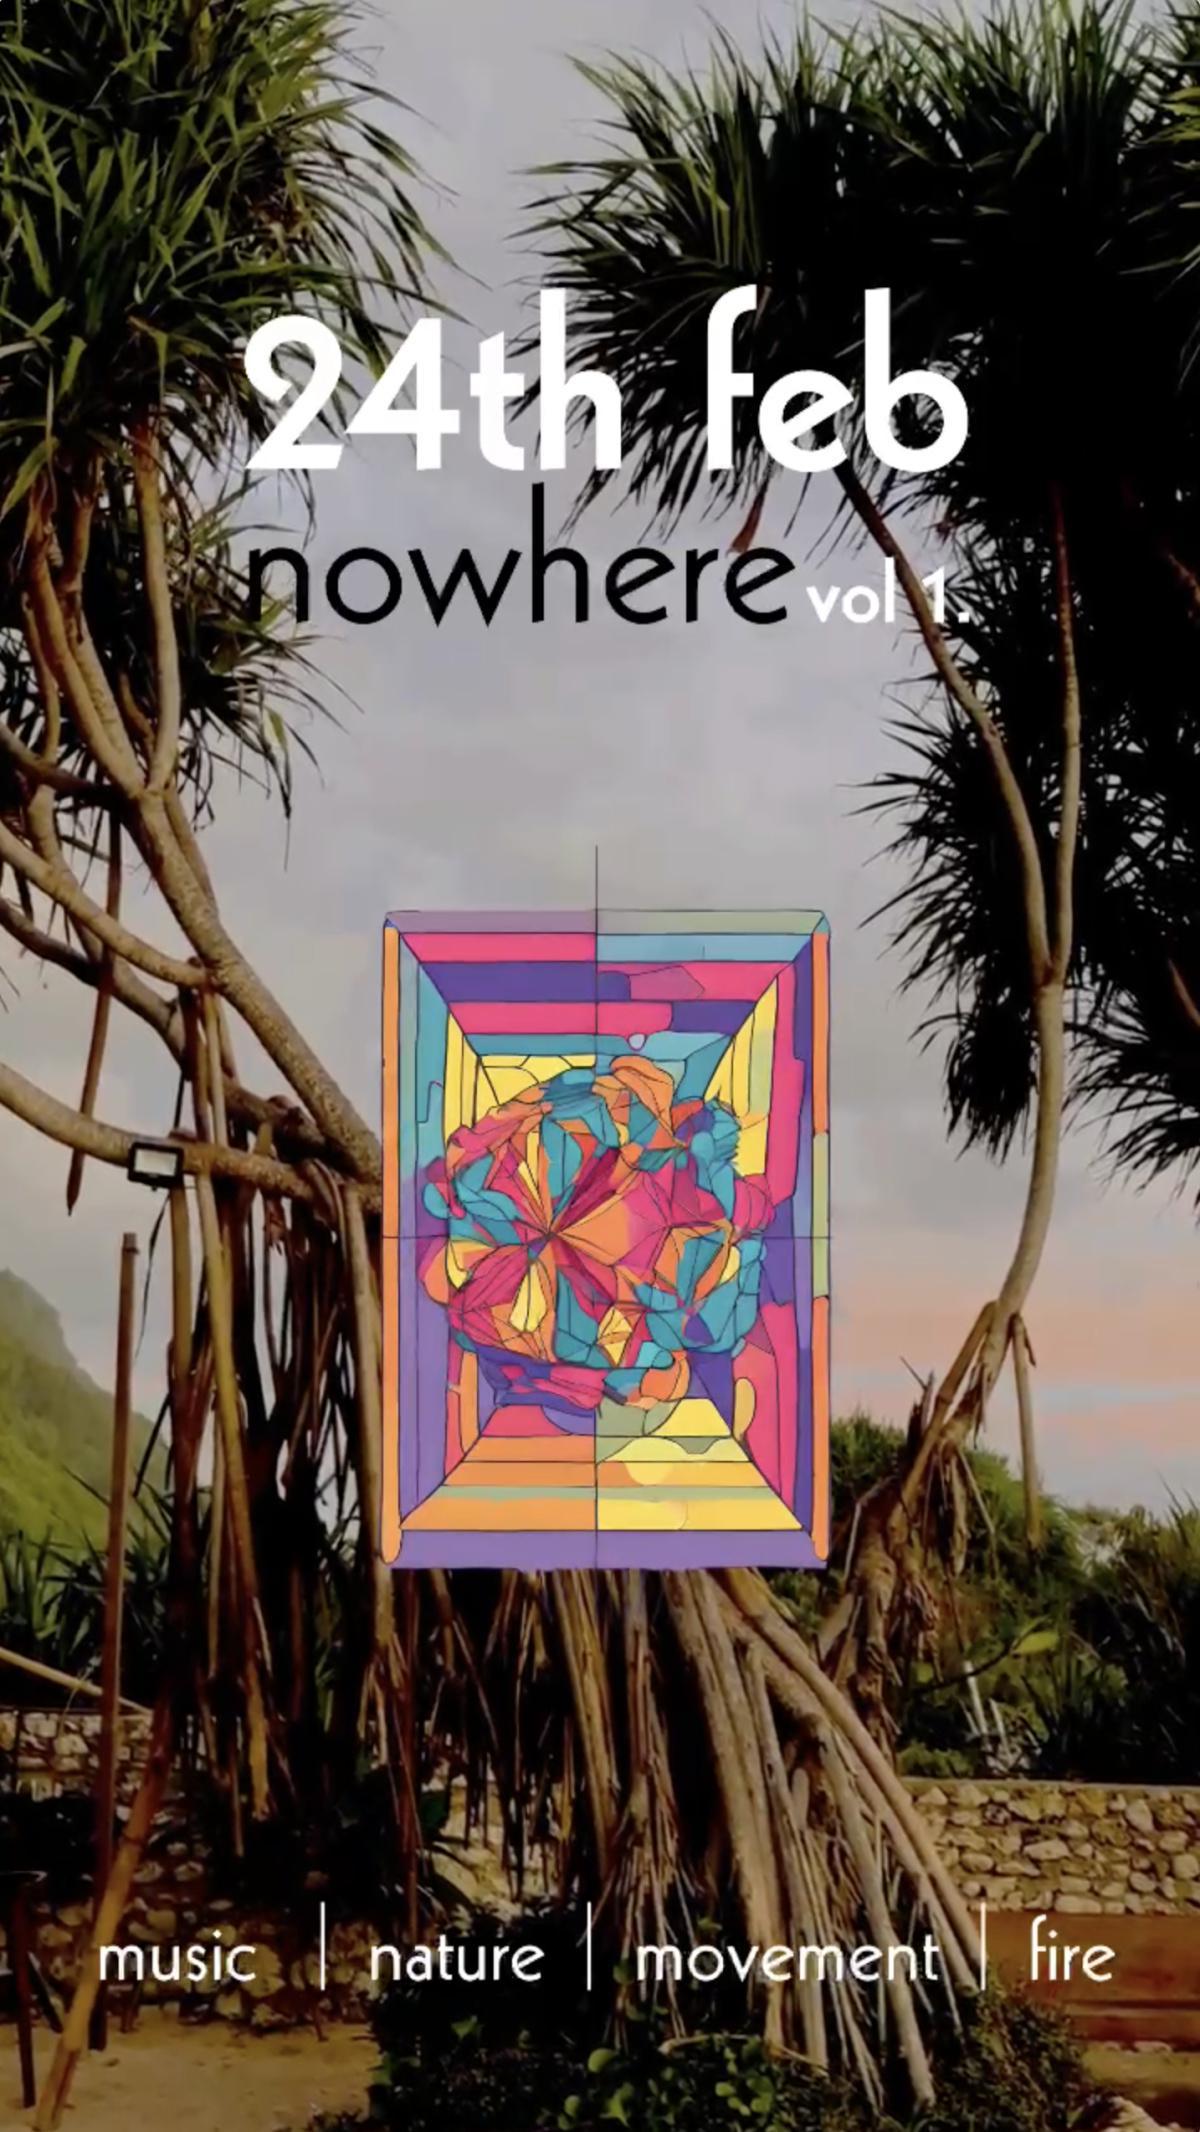 Party Nowhere Vol 1 at Utilis Nyang Nyang Beach 11660